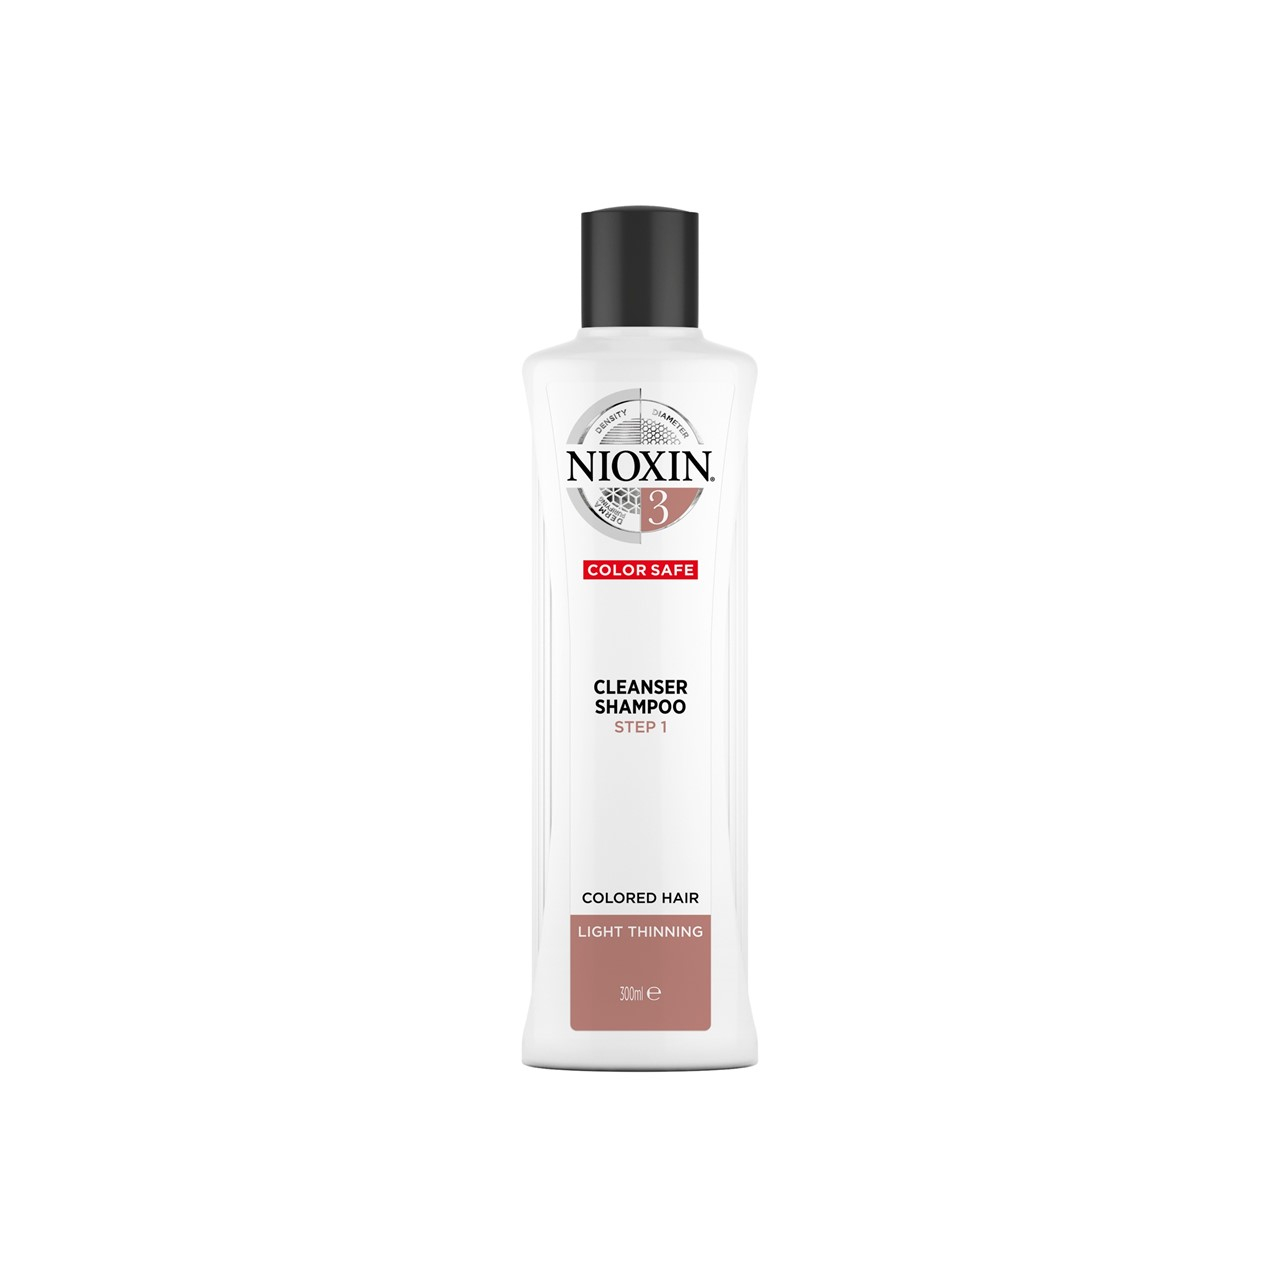 Nioxin System 3 Cleanser Shampoo 300ml (10.14fl oz)